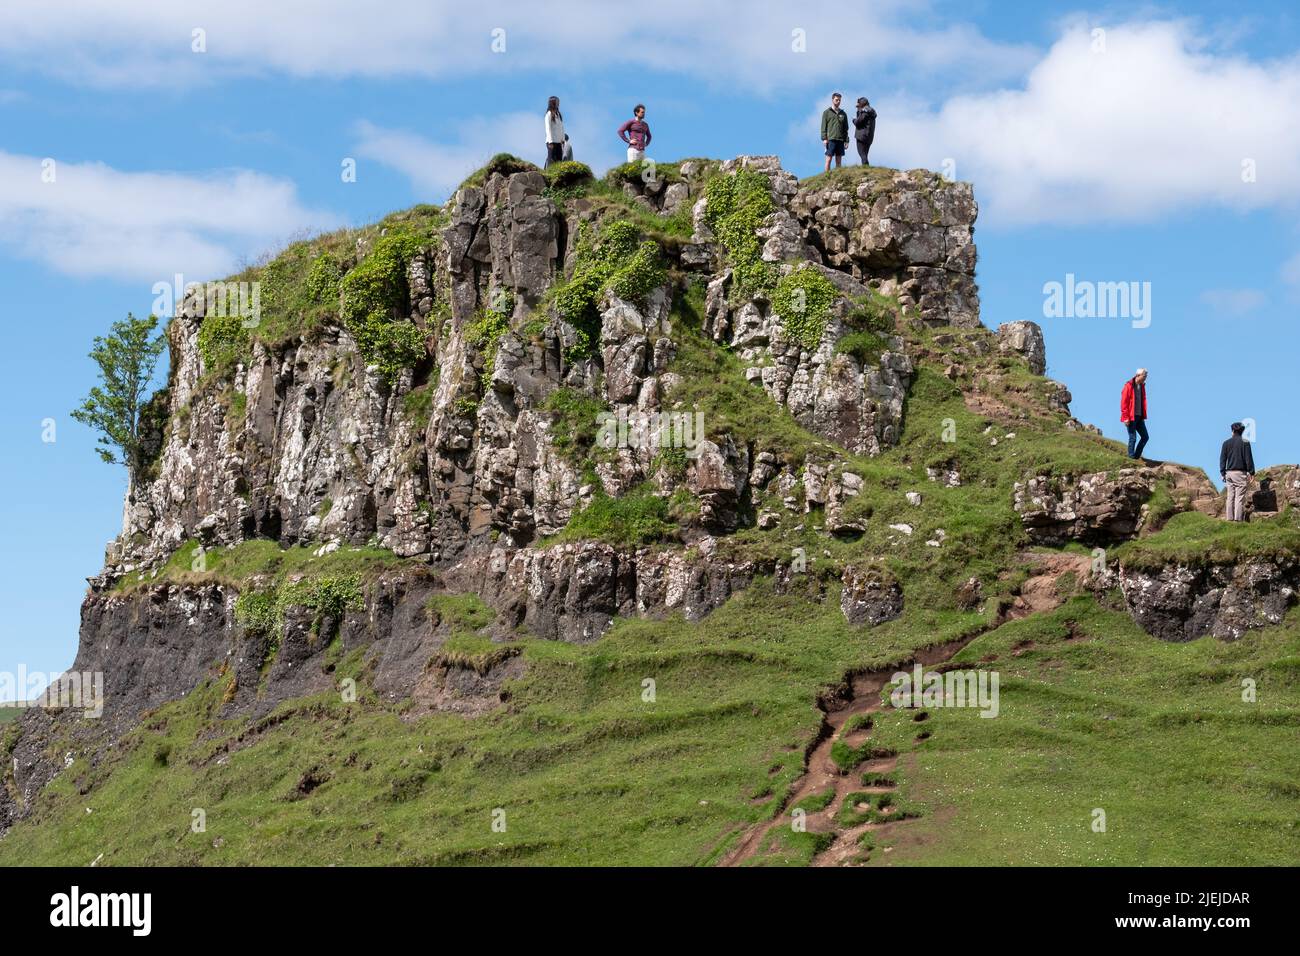 Touristes à Fairy Glen sur la péninsule de Trotternish. Paysage varié avec des collines, des vallées et des falaises de basalte au nord de Skye. La région souffre de surtourisme. Banque D'Images